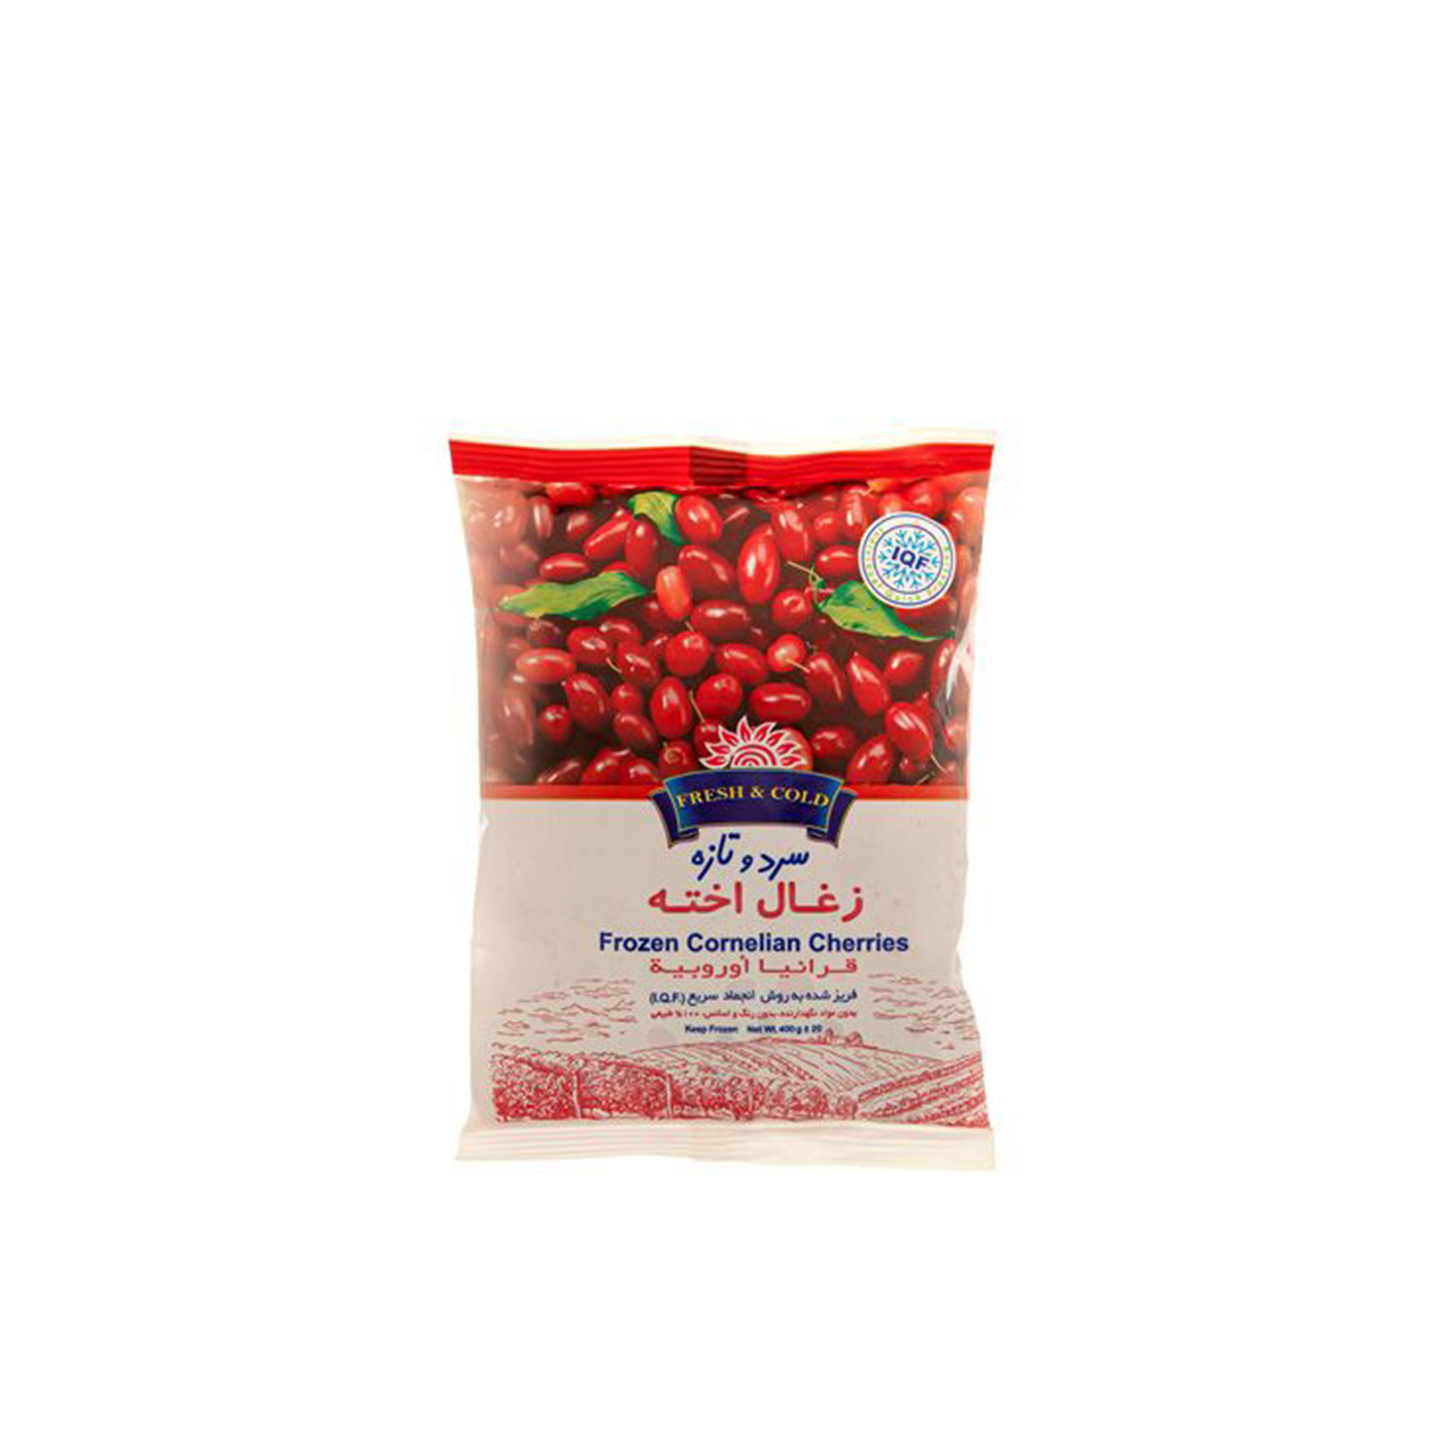 Fresh & Cold Cornelian Cherries 400g